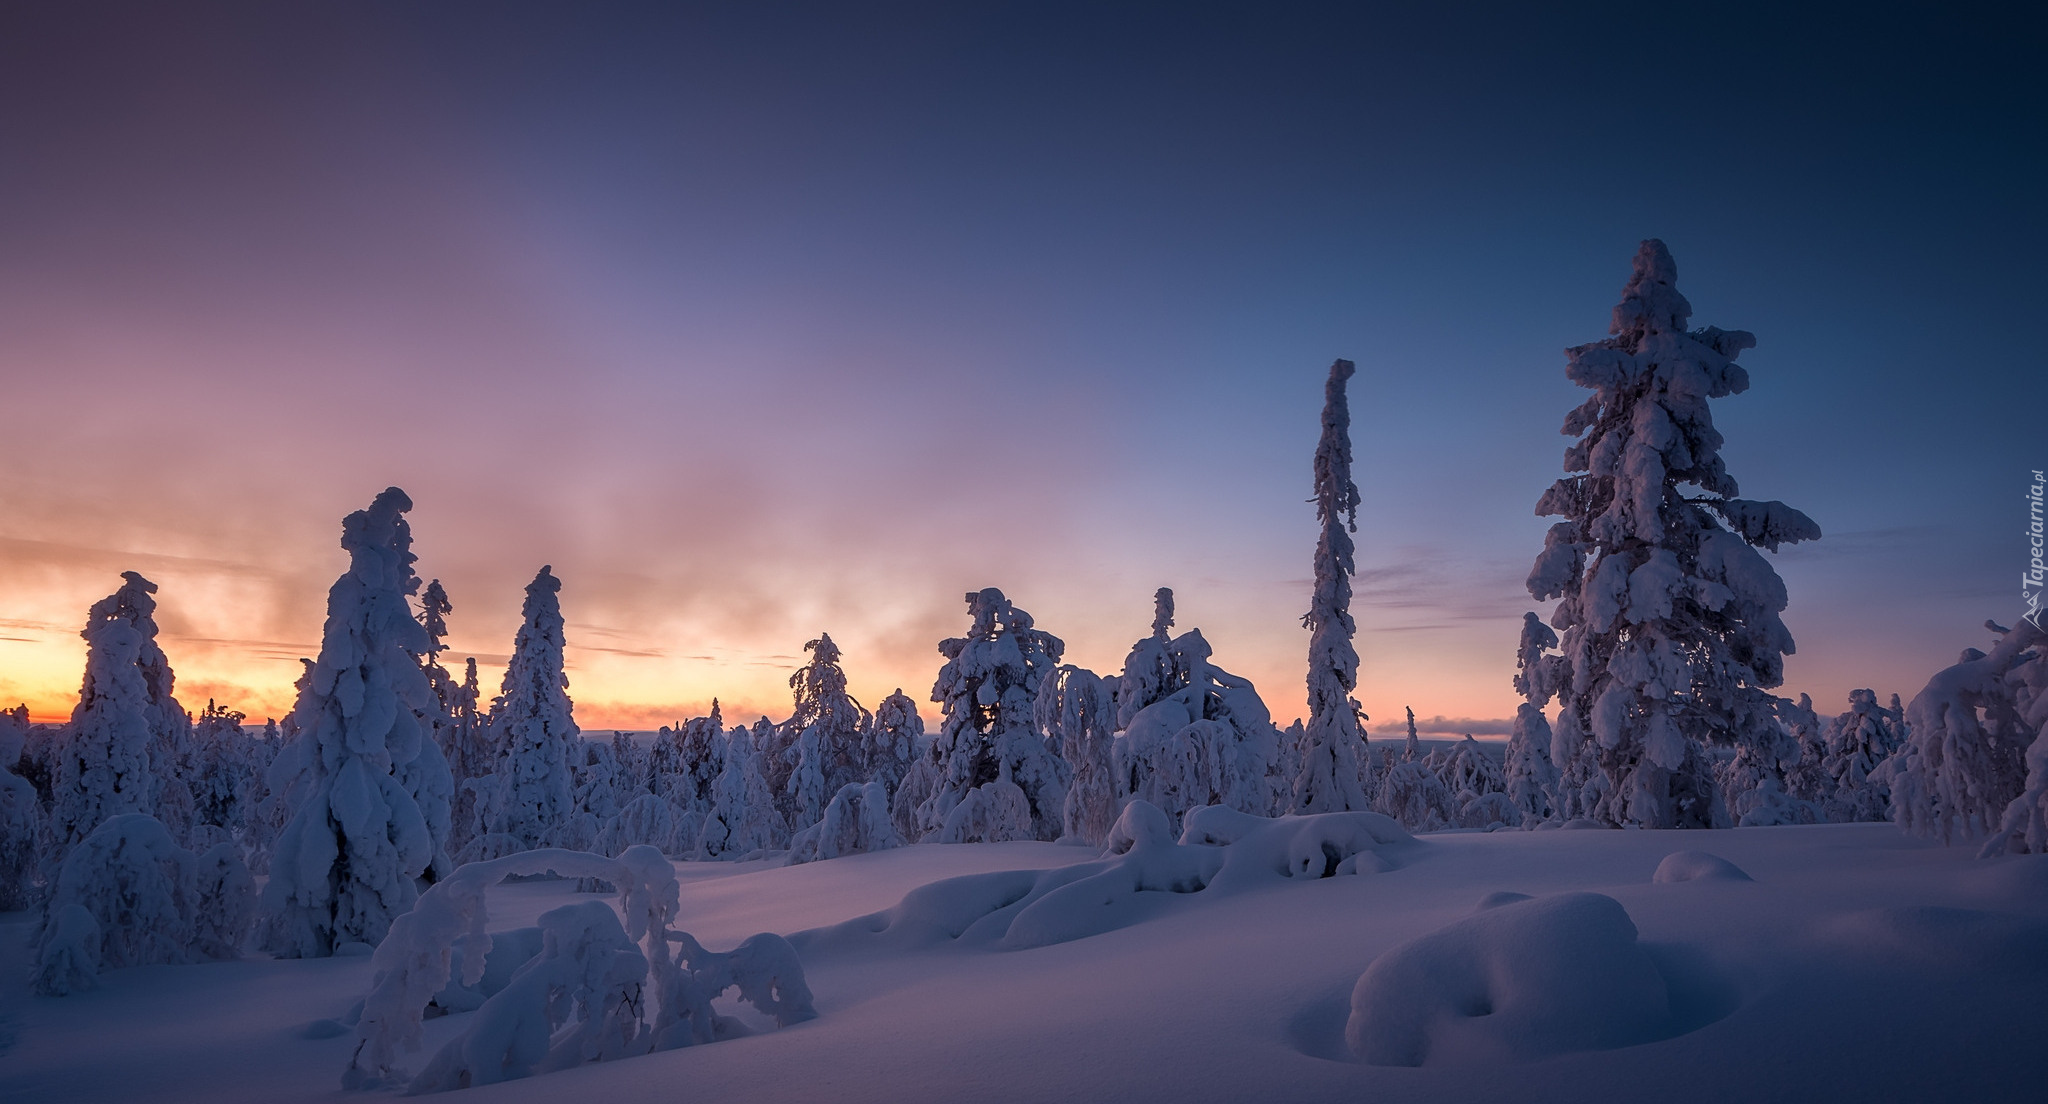 Finlandia, Laponia, Wzgórze Kuertunturi, Zima, Ośnieżone, Drzewa, Zachód słońca